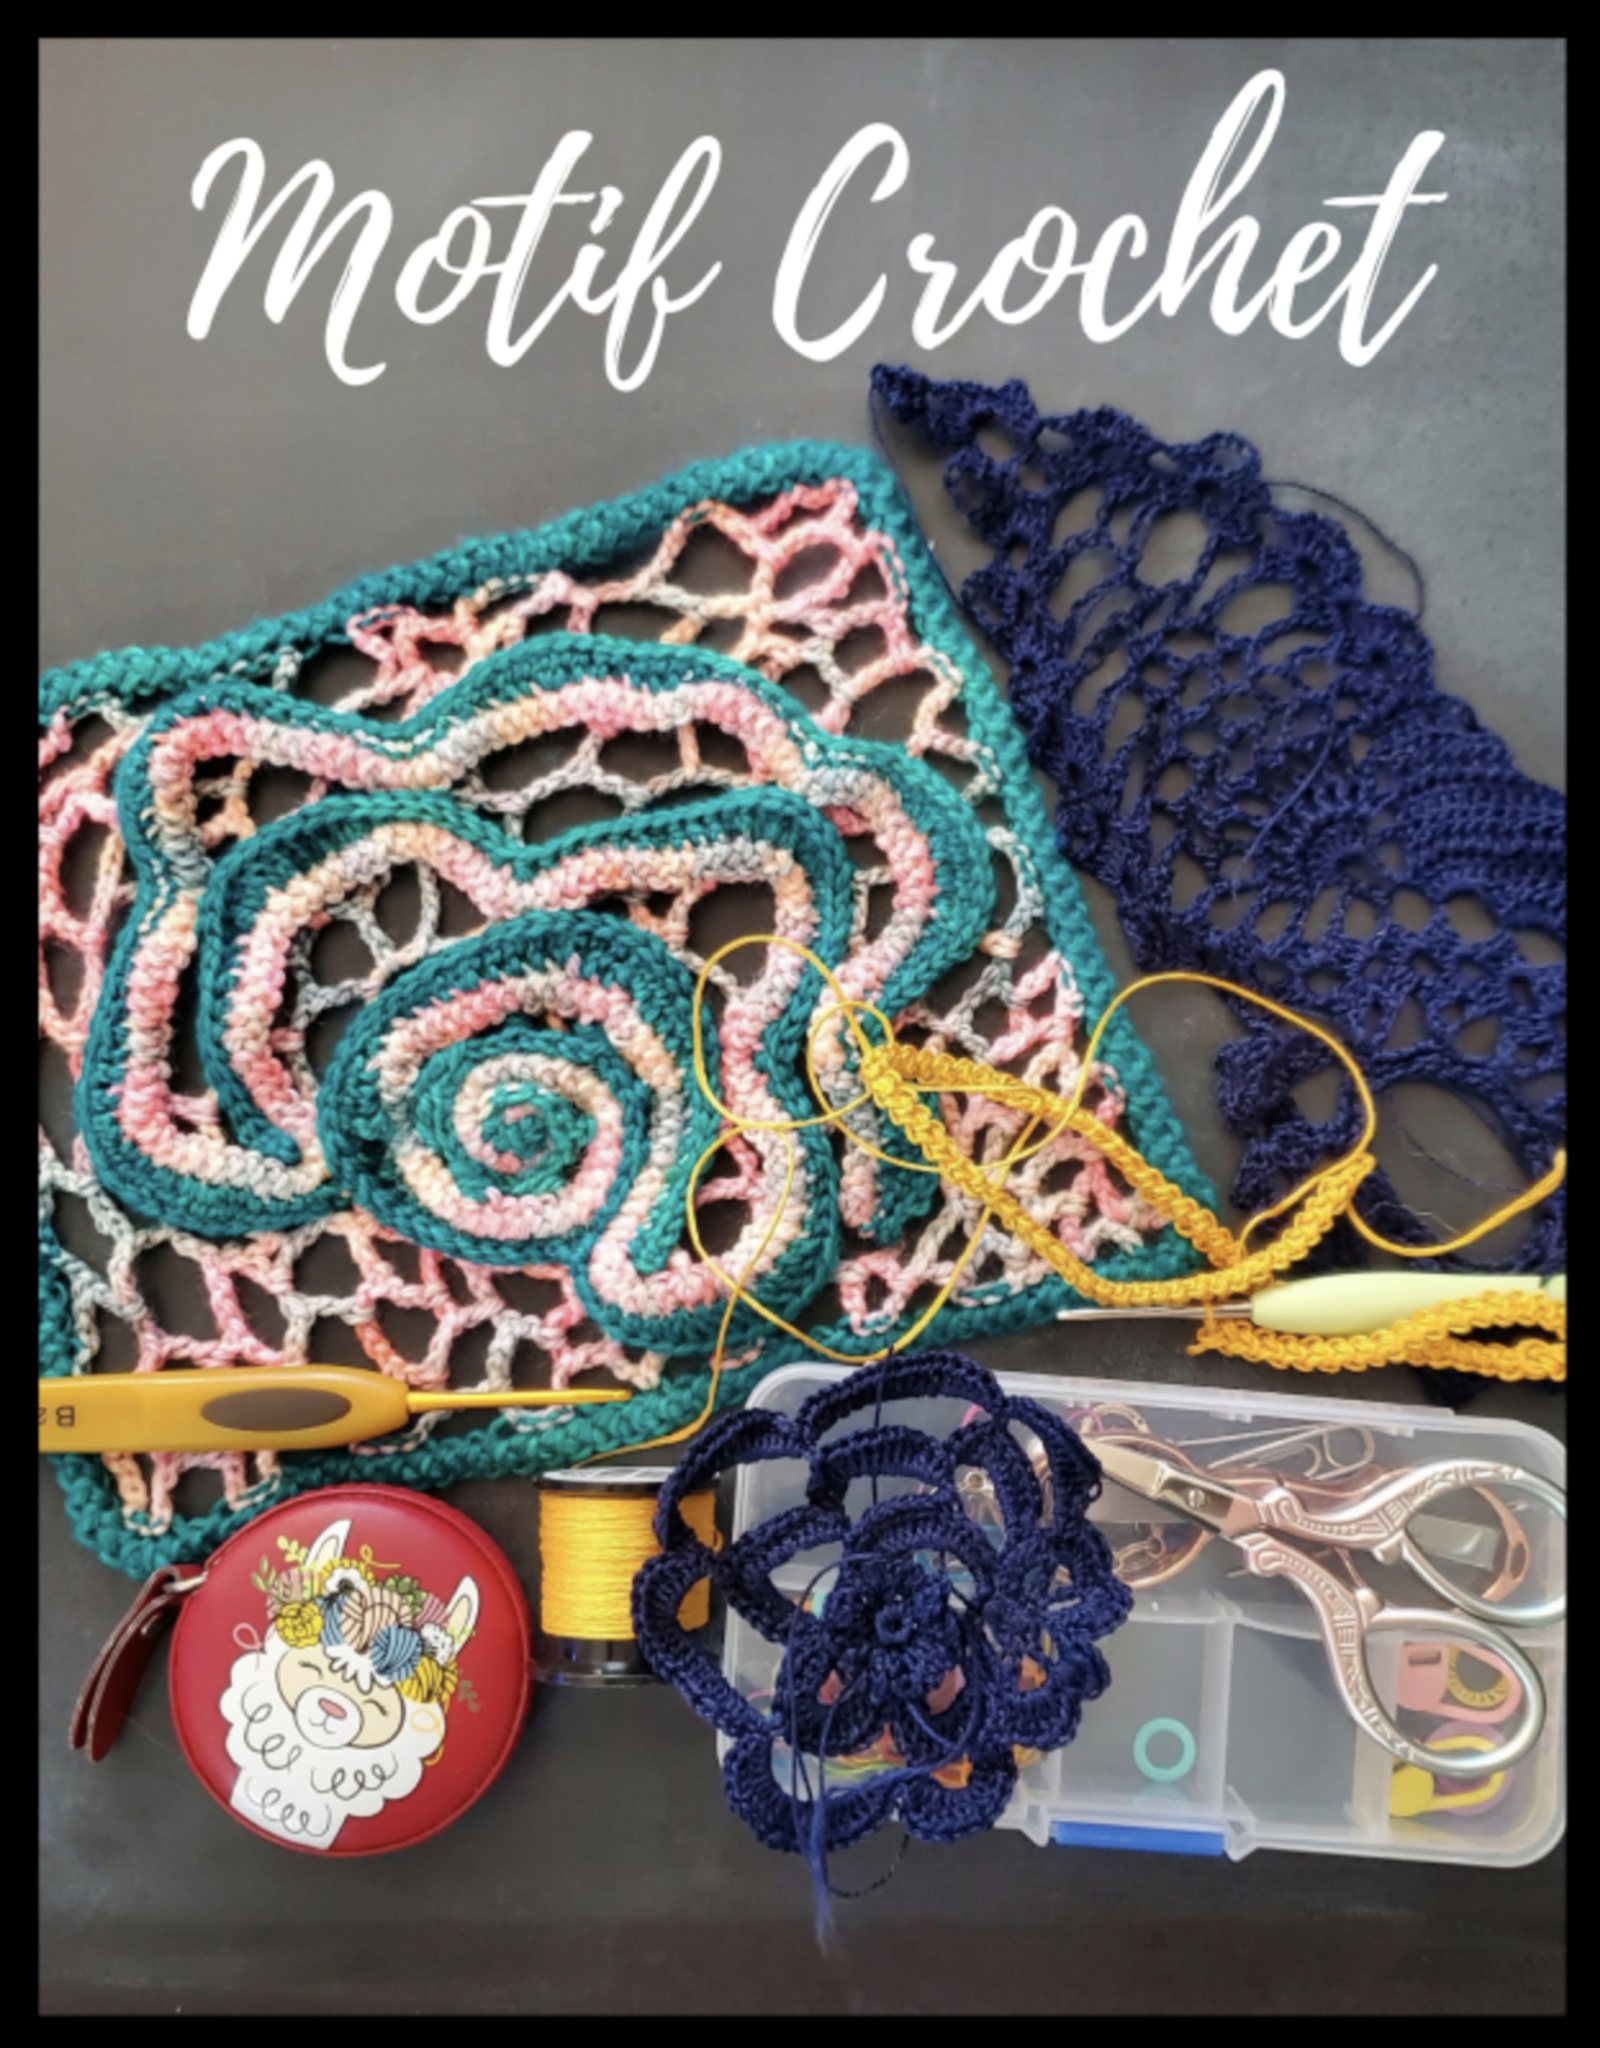 Motif Crochet - Sundays, May 22 & June 12, 12-3pm